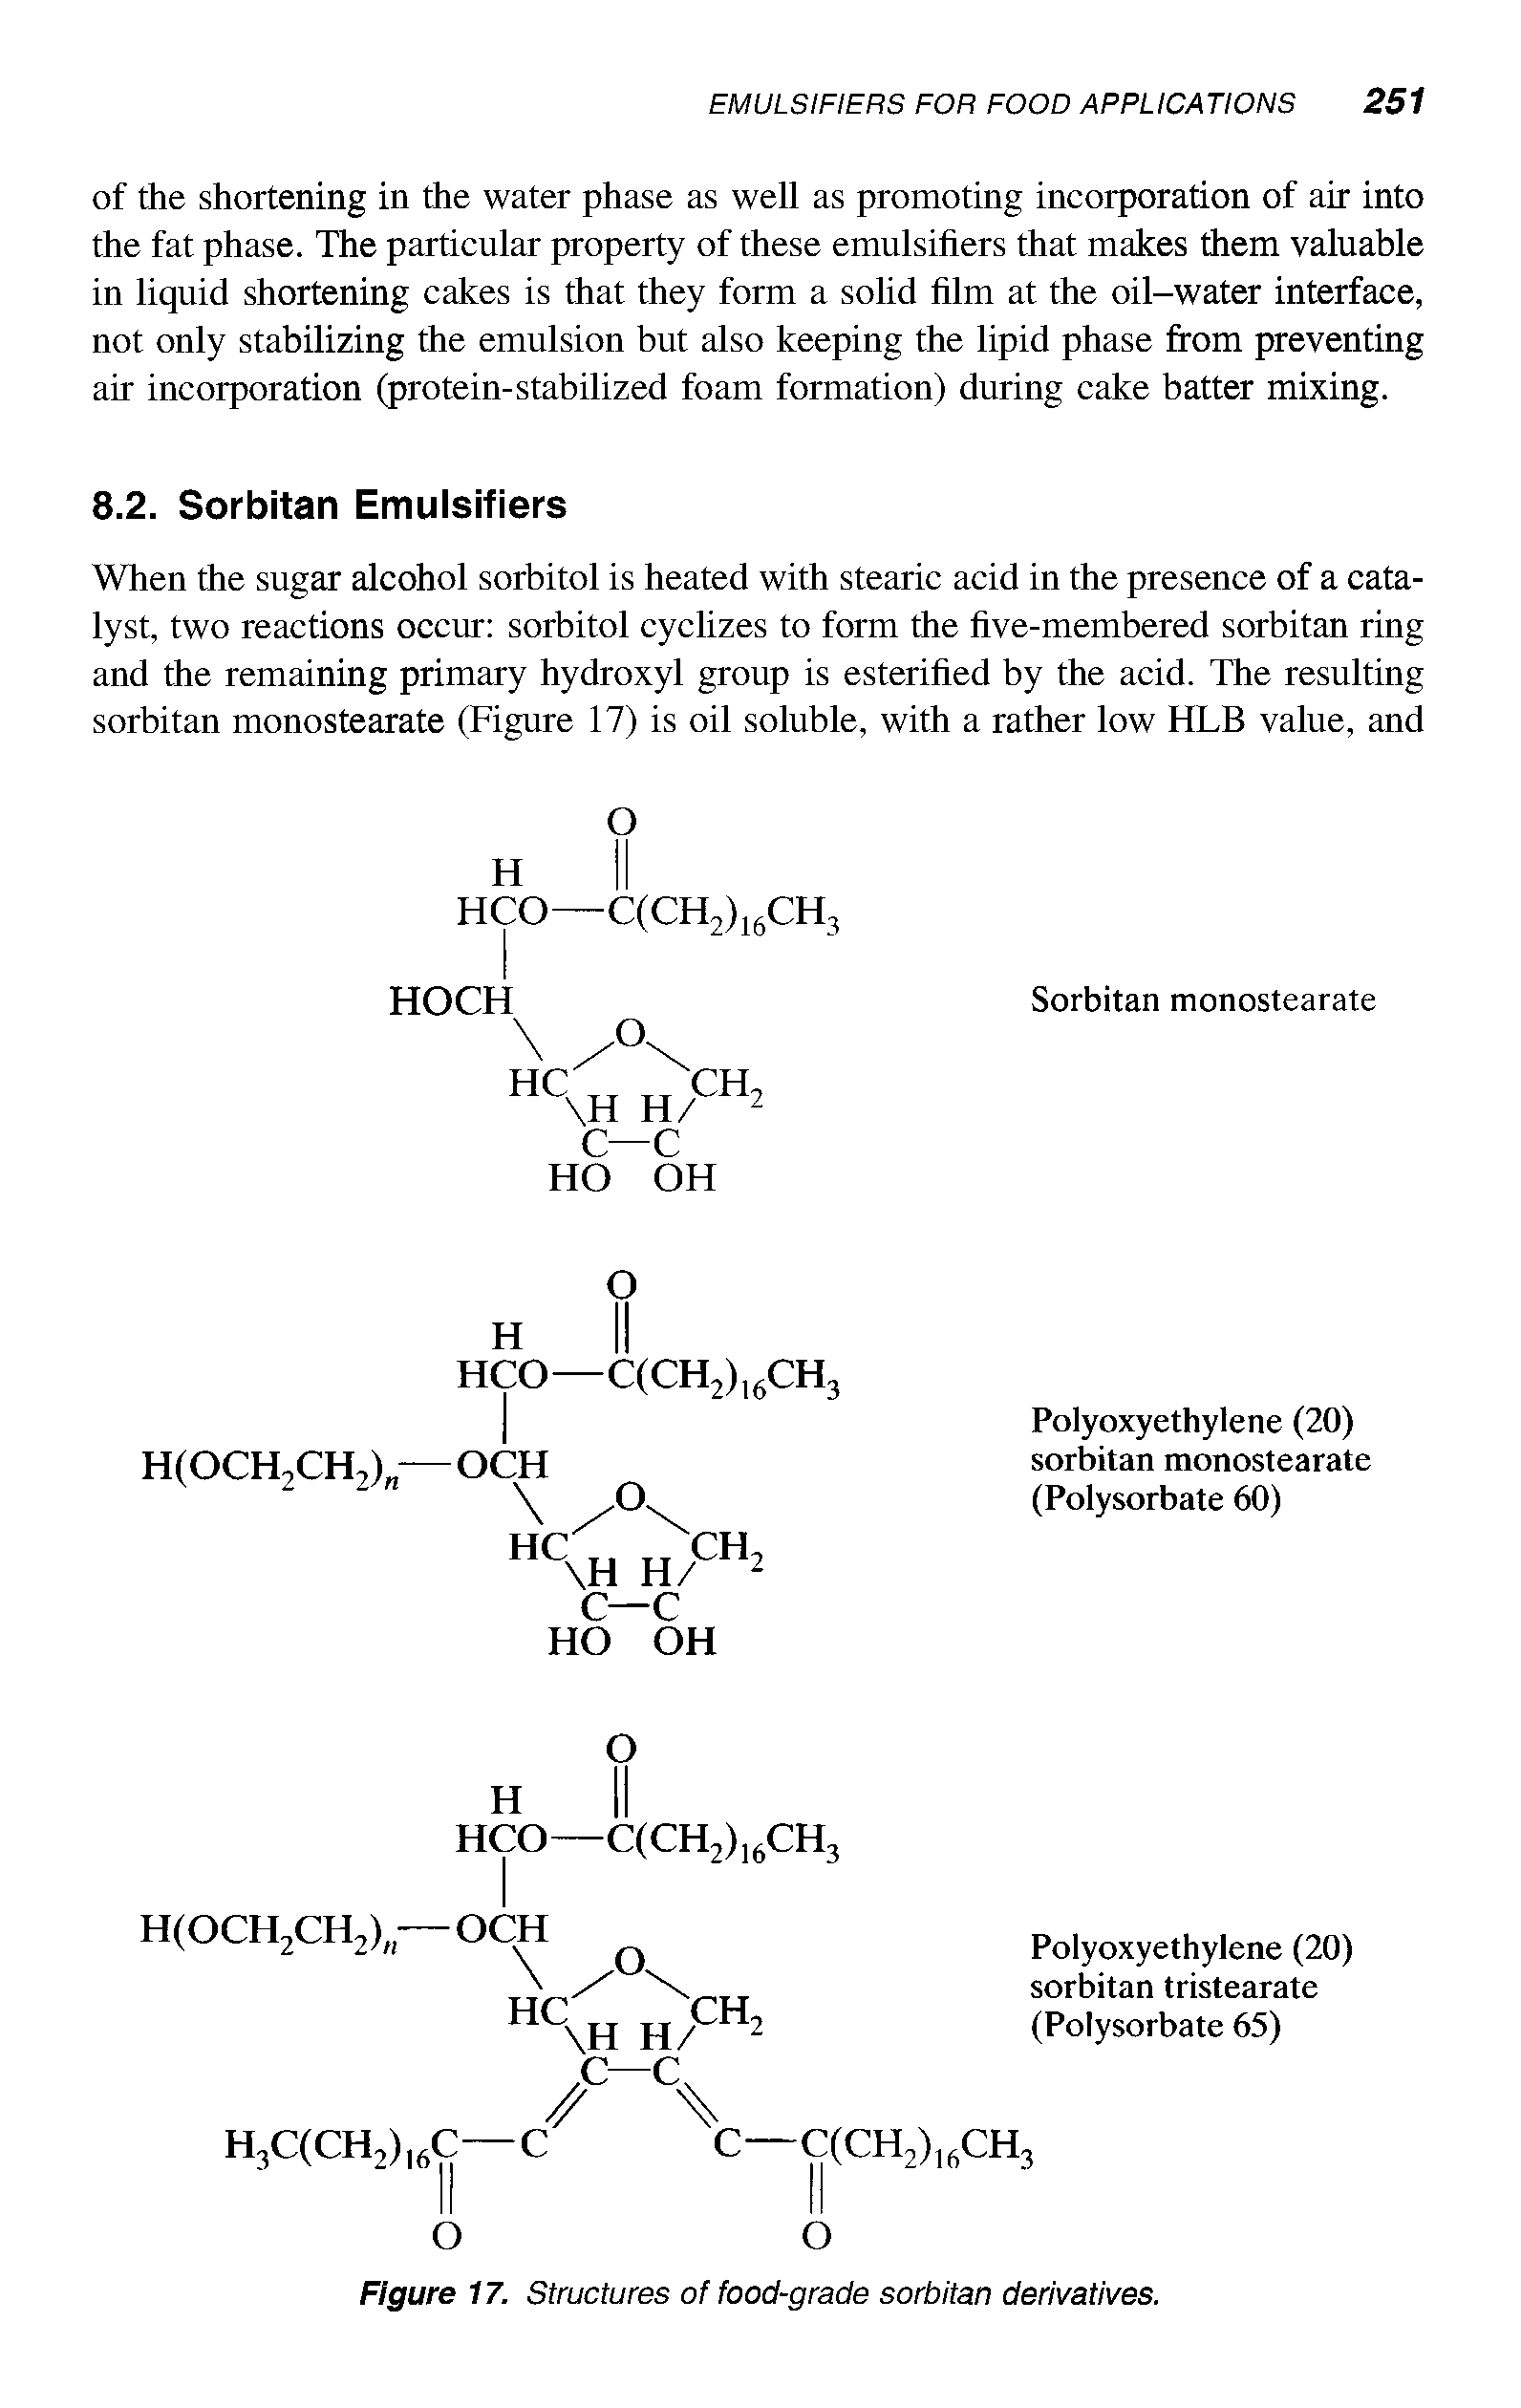 Figure 17. Structures of food-grade sorbitan derivatives.